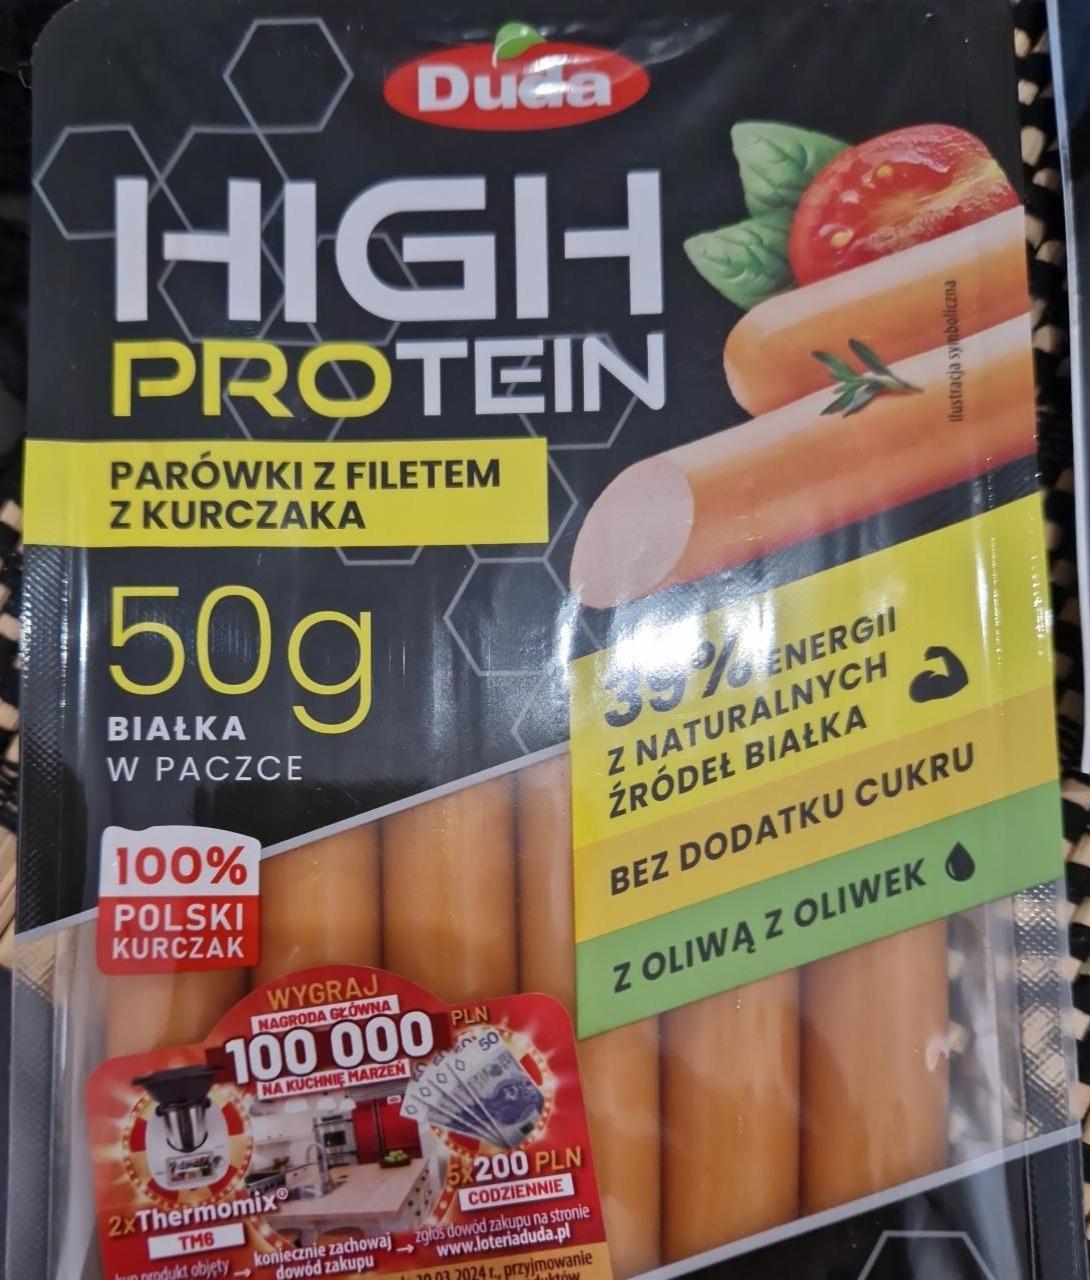 Fotografie - High Protein parówki z filetem z kurczaka Duda